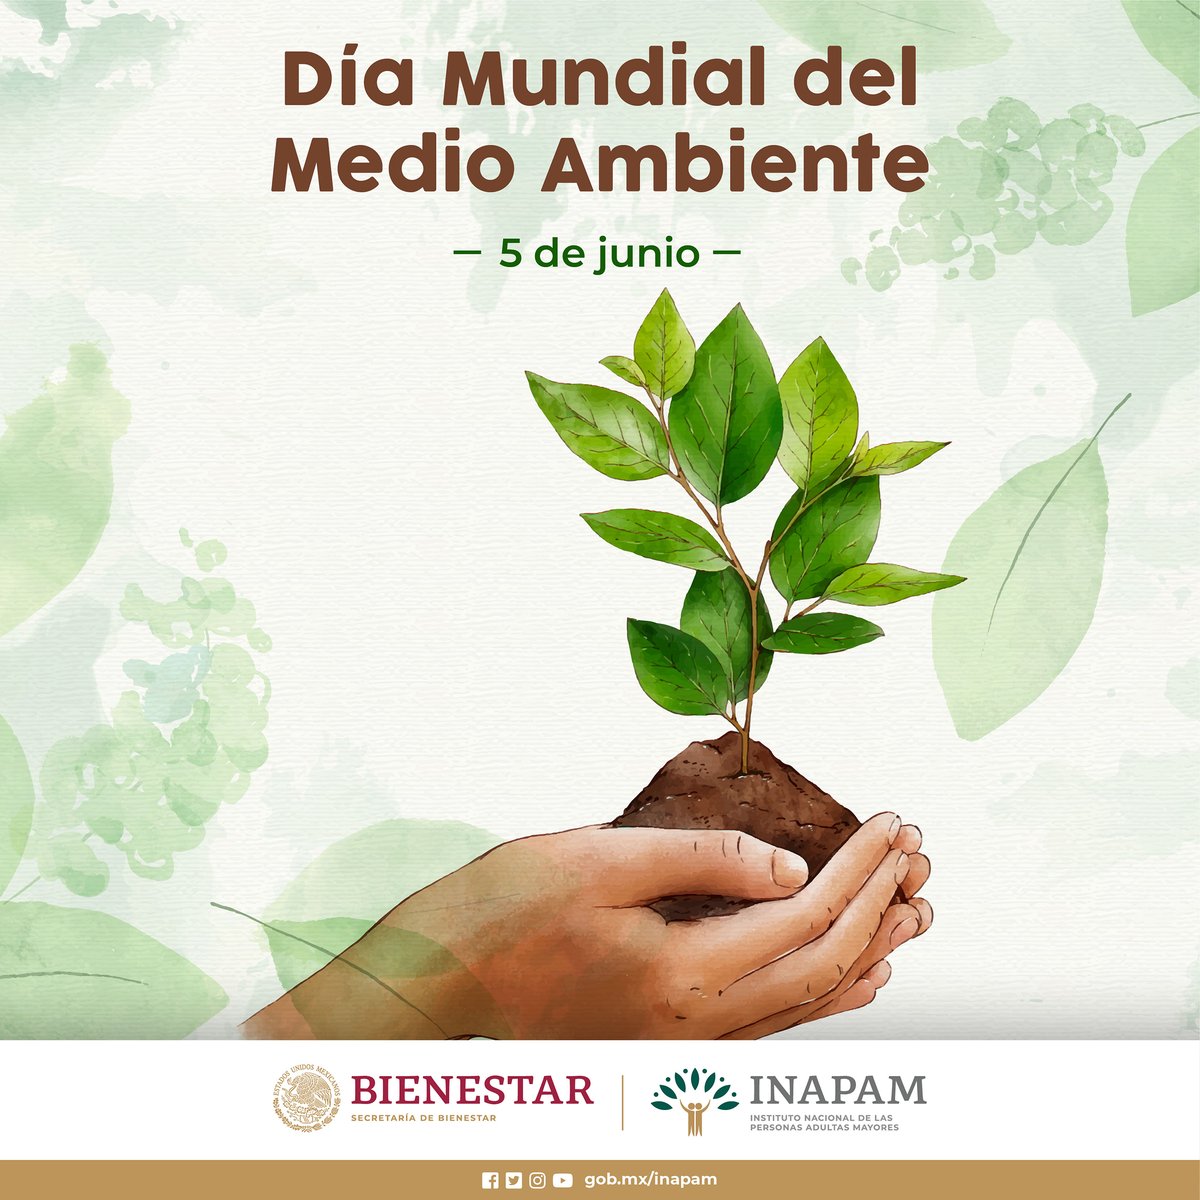 #FelizLunes #CuidaElPlaneta promueve acciones para su preservación, es responsabilidad de todos la protección y la salud del #MedioAmbiente
@SEMARNAT_mx
@SEDEMA_CDMX
@CONANP_mx
@CONAFOR